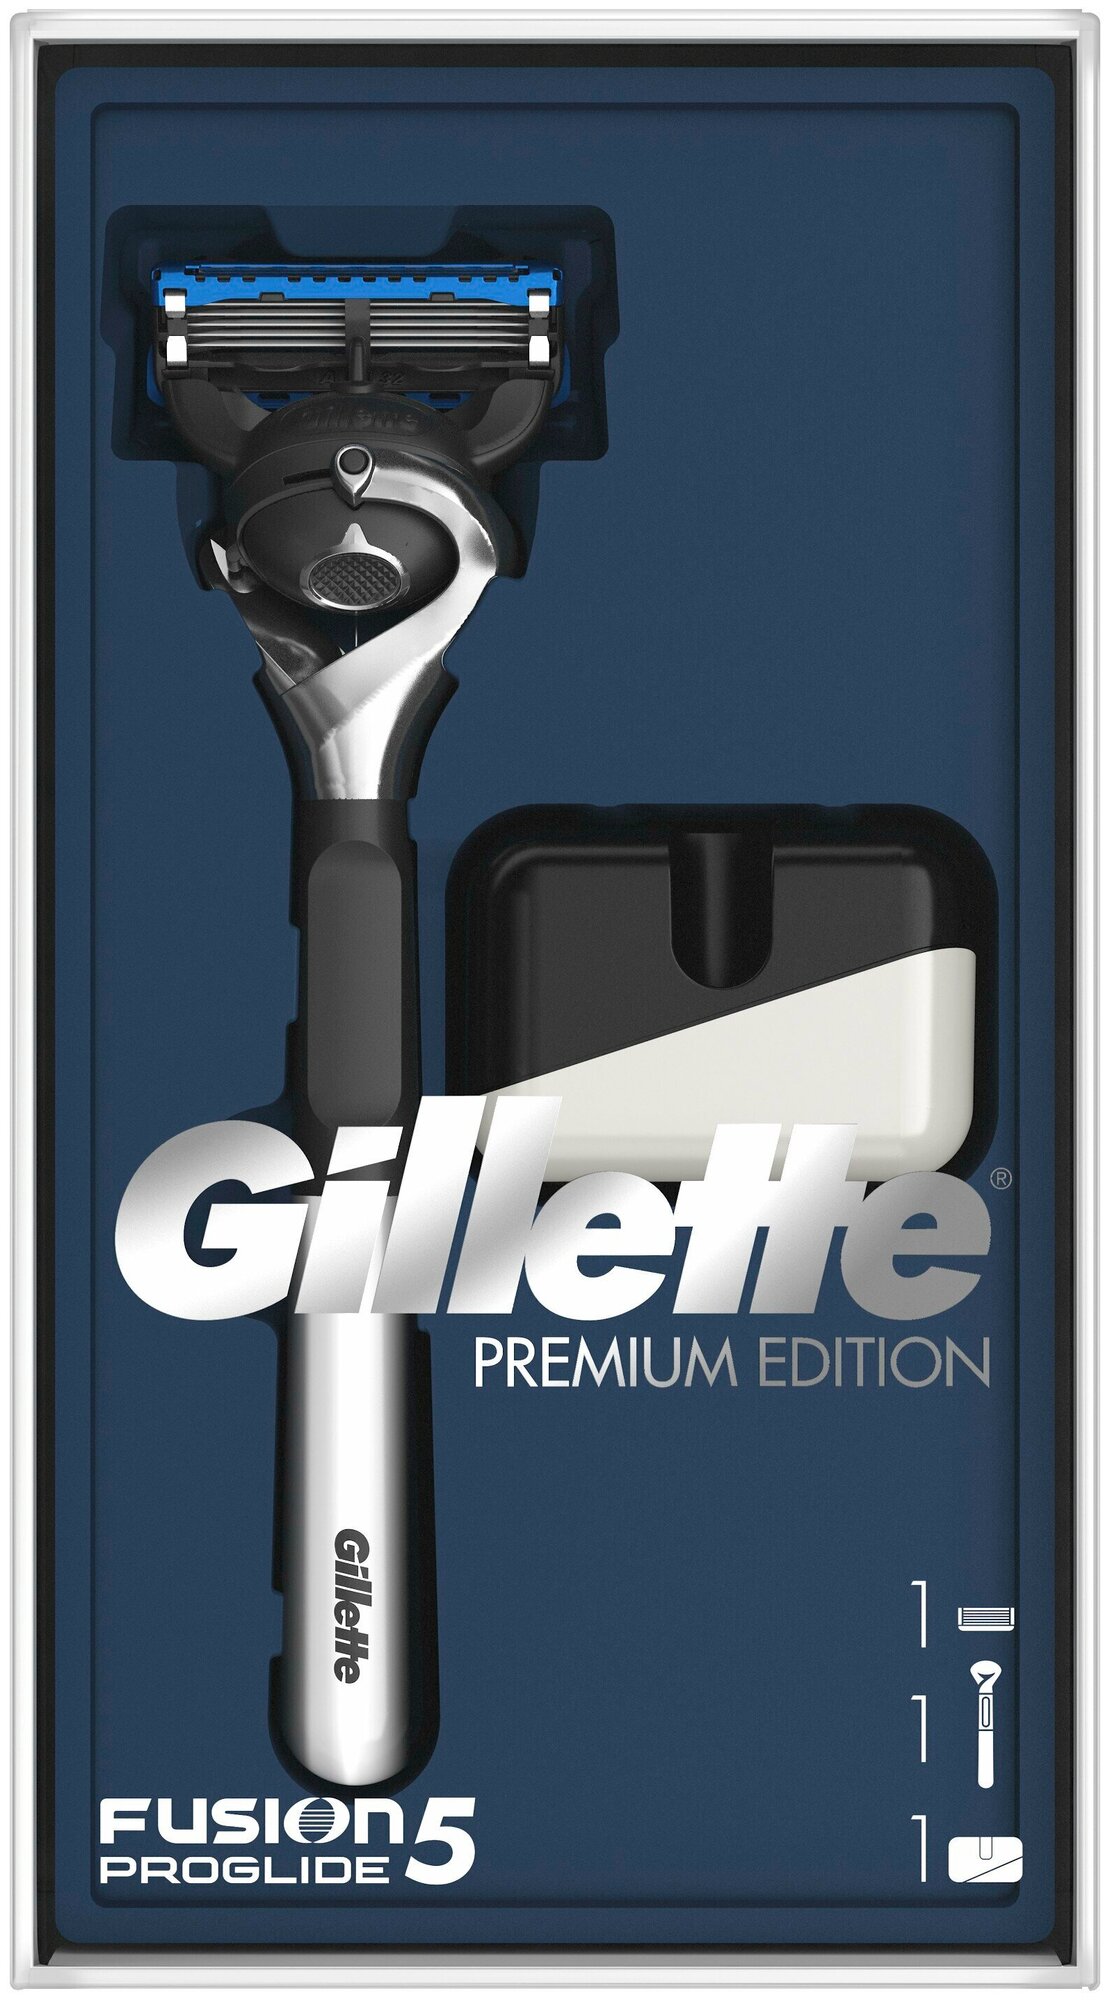 Подарочный набор Gillette (Бритва Fusion5 ProGlide + Подставка для бритвы)